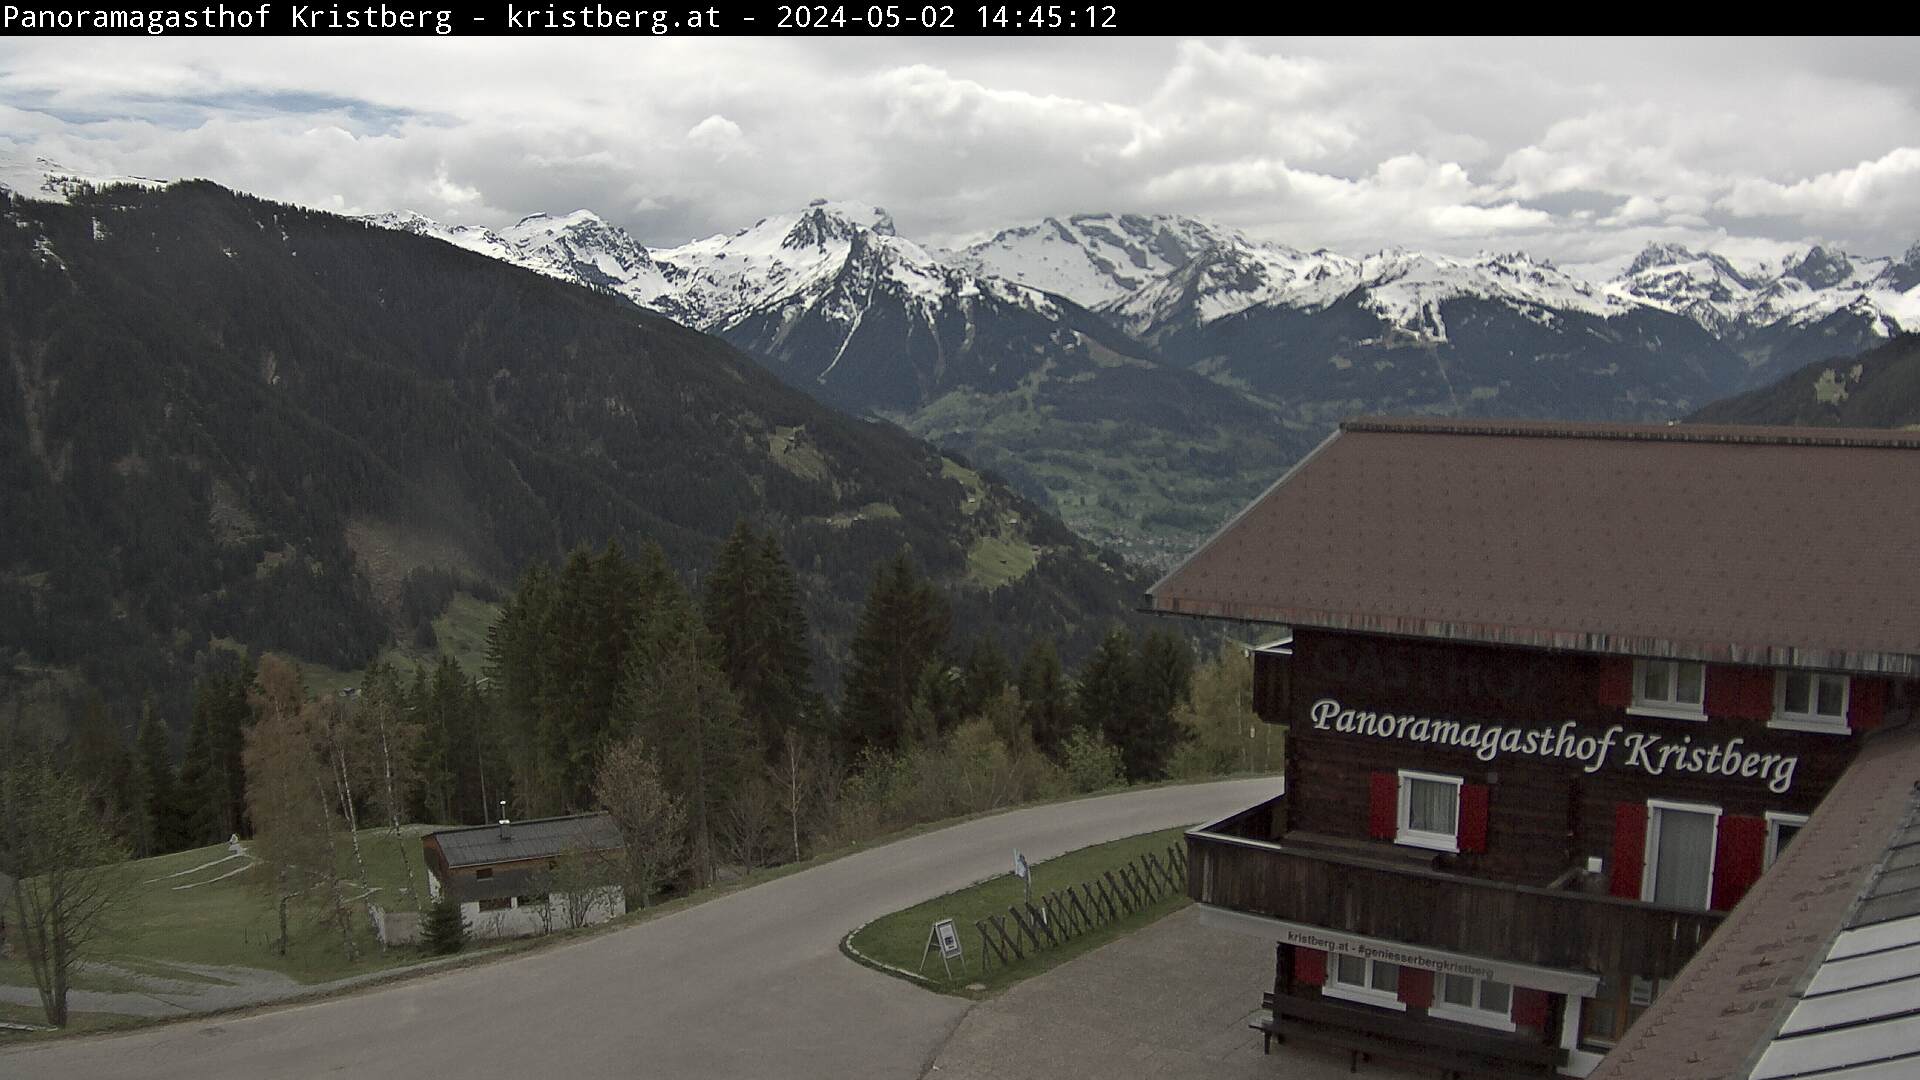 Die Webcam mit diesem Livebild zeigt den Panoramagasthof Kristberg mit Blick auf die Rätikongebirgsgruppe, Schruns-Tschagguns und Golm